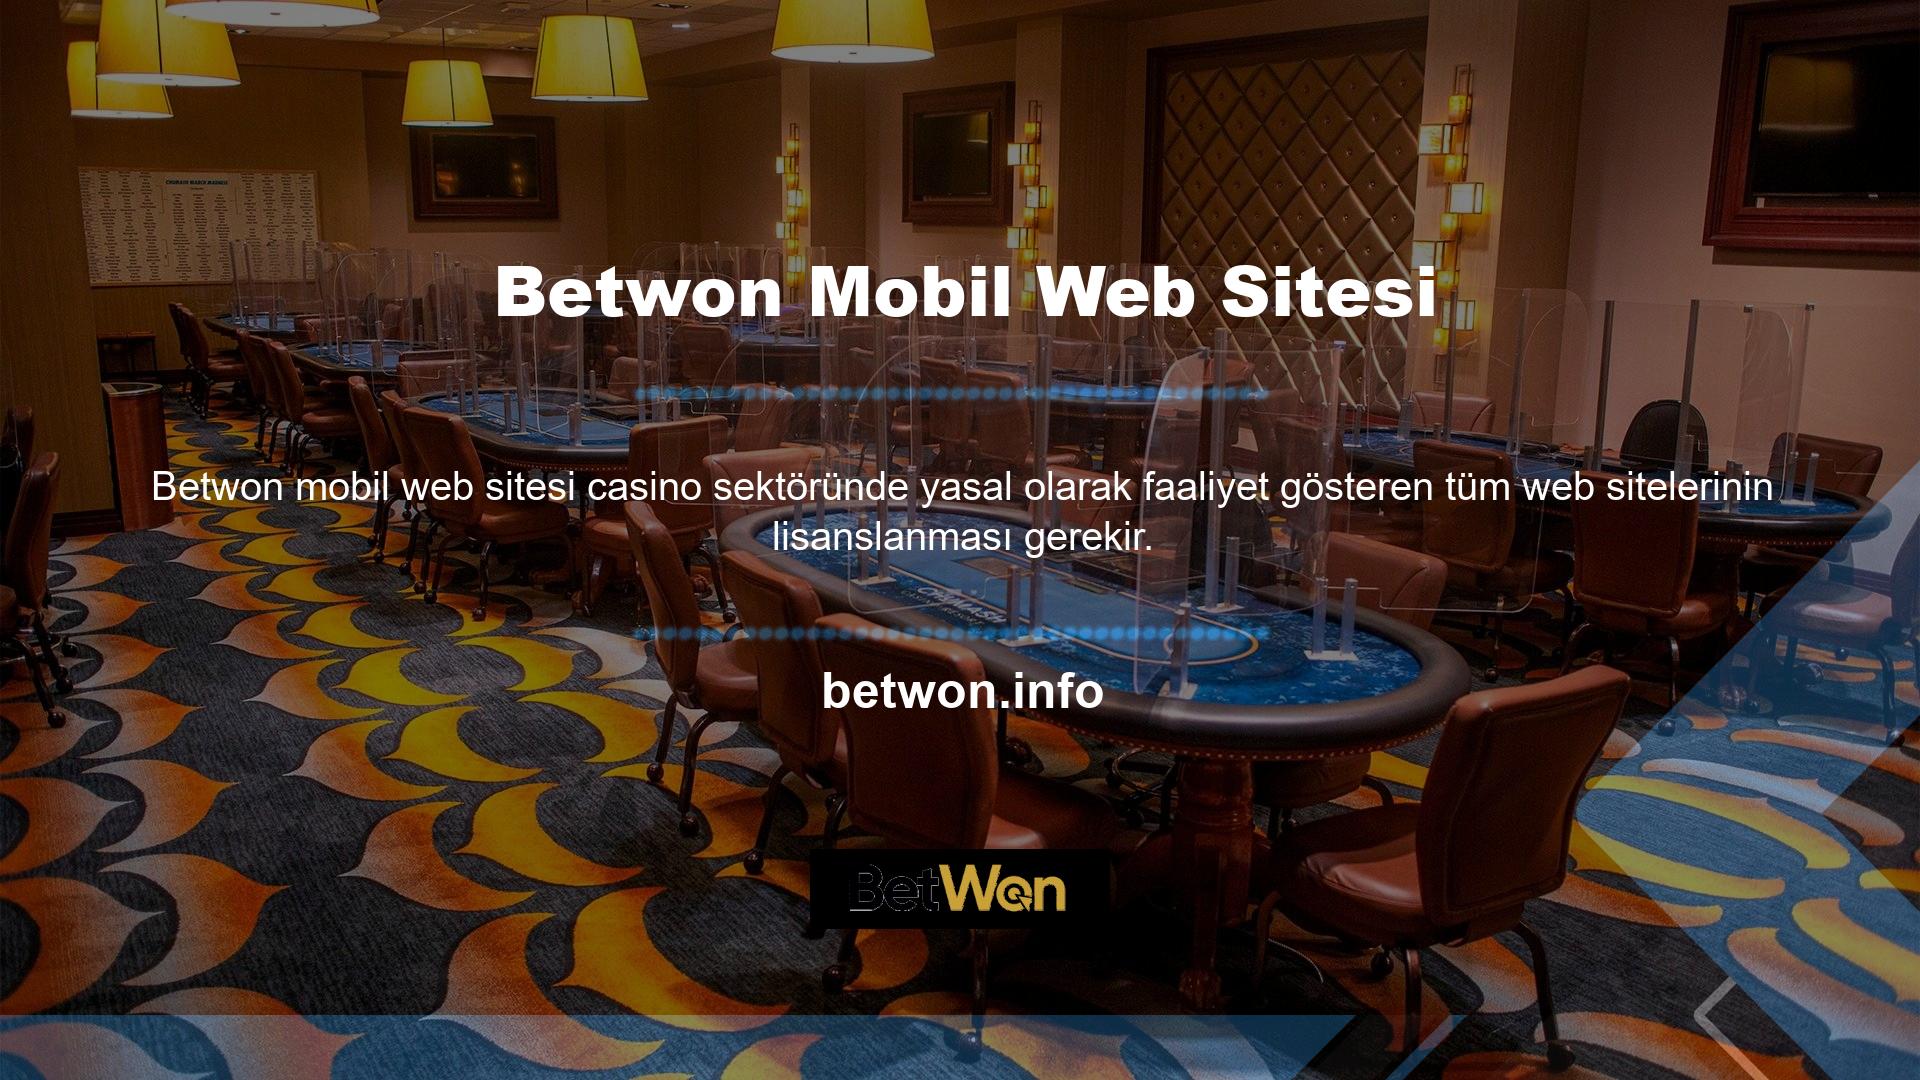 Betwon, lisanslı çevrimiçi casino sitelerinin üyelerine hizmet vermektedir